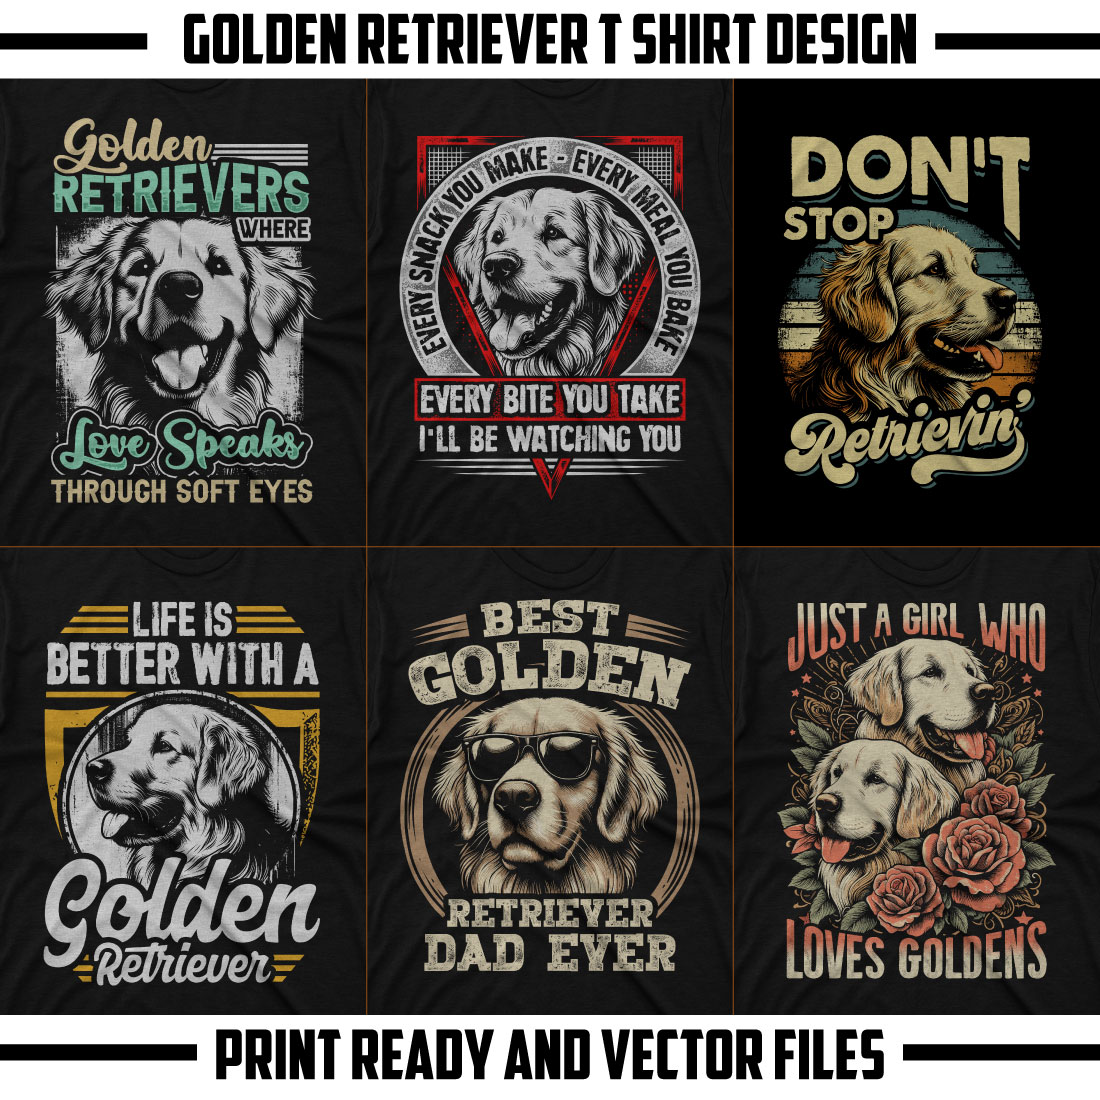 Golden retriever dog t shirt design bundle cover image.